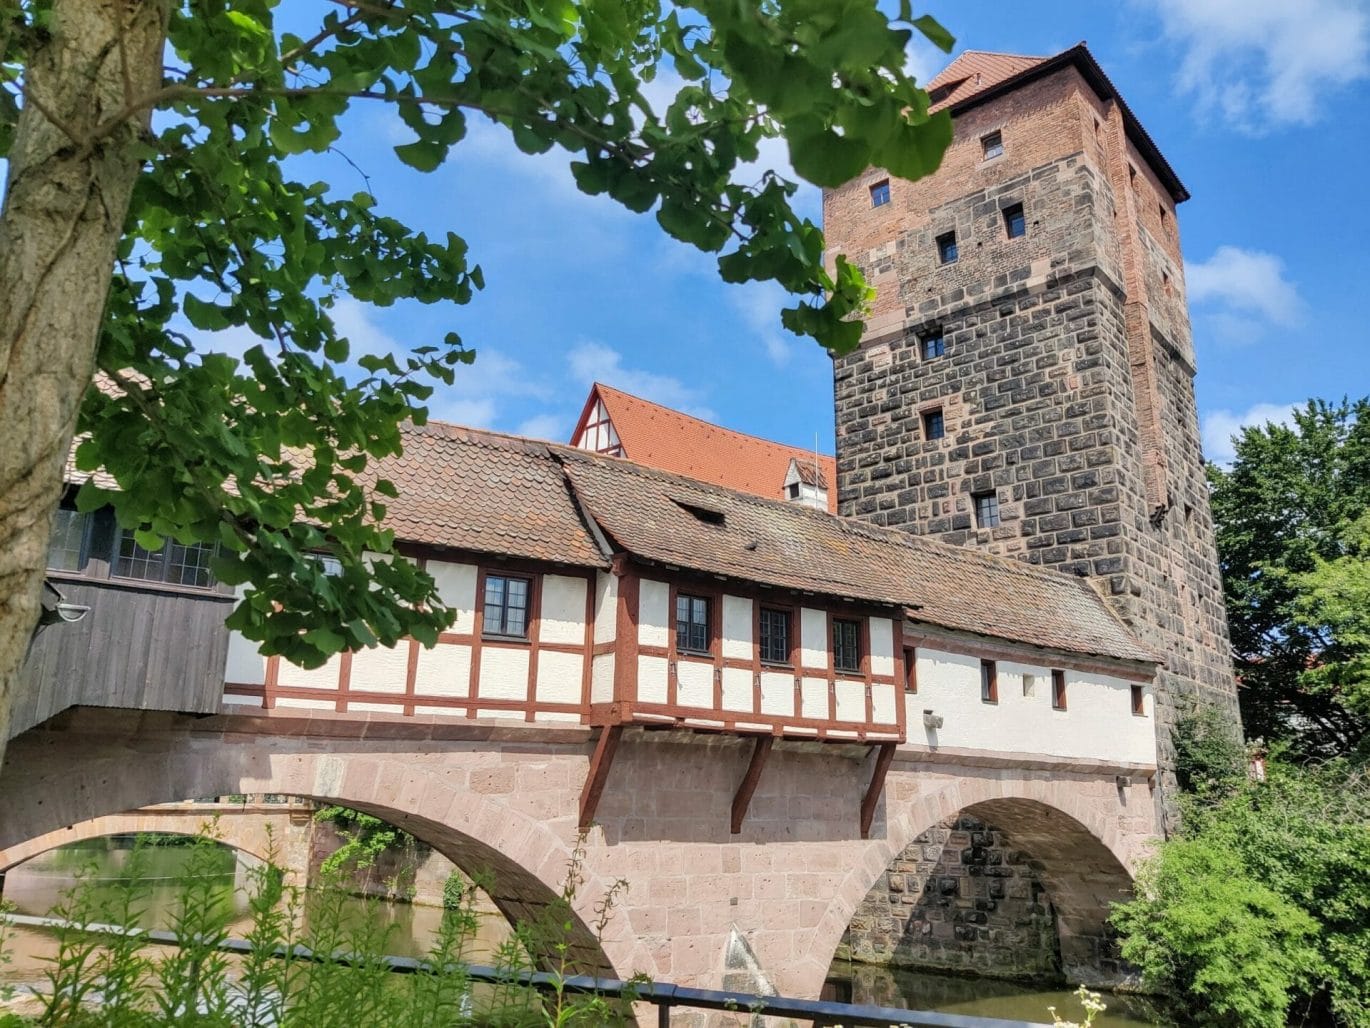 Bier in Beieren deel 3: historisch Nürnberg